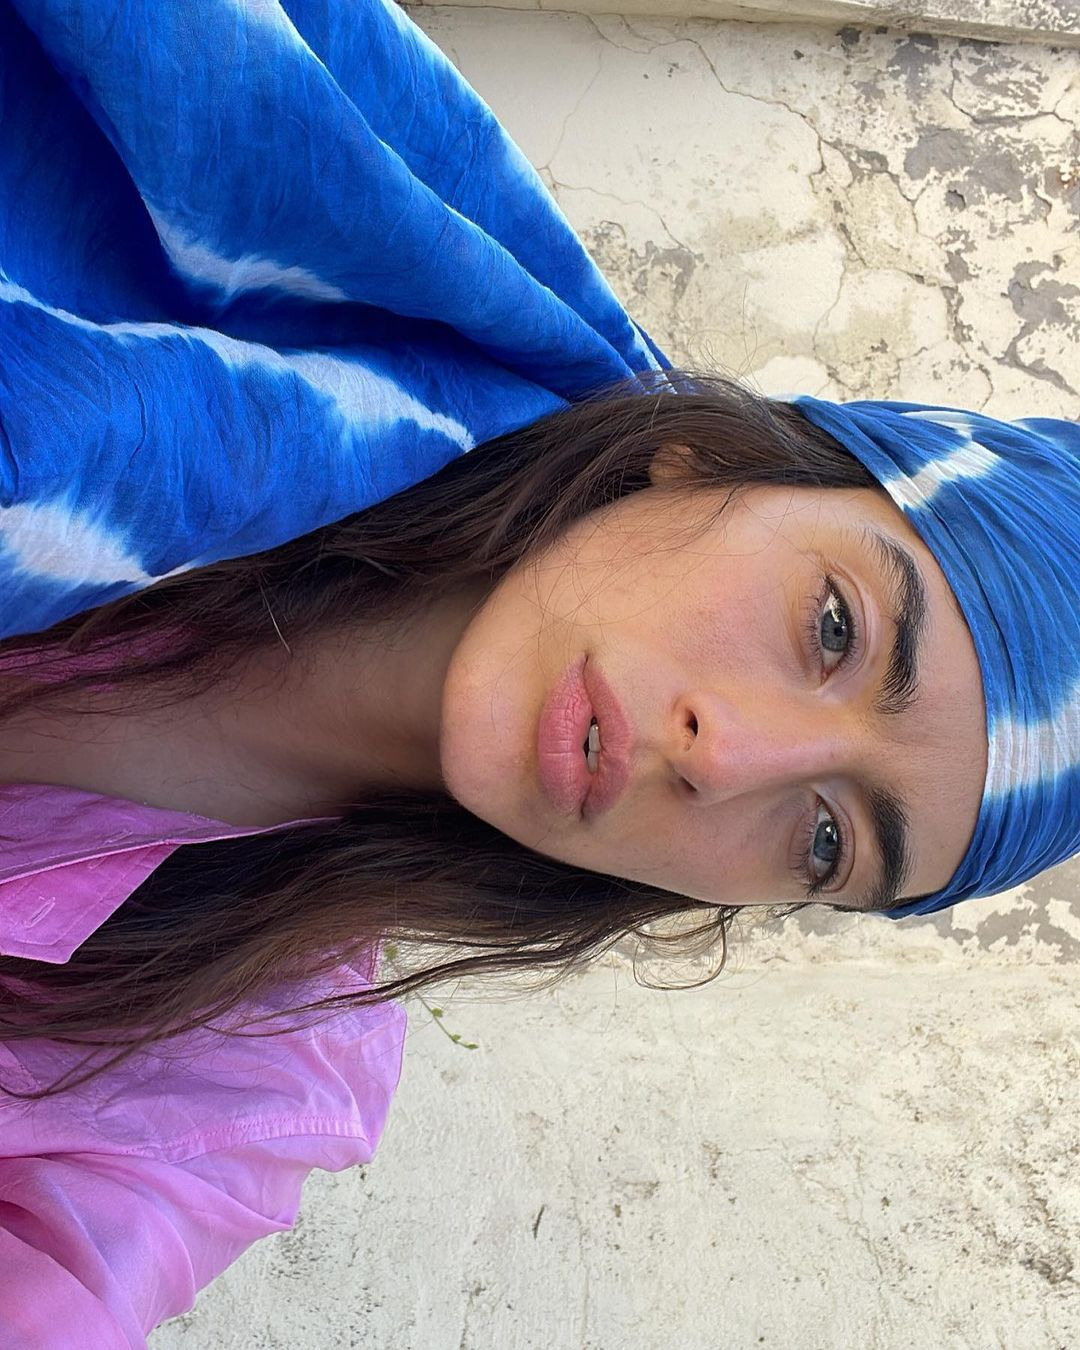 Hailey Bieber'dan Josephine Skriver'a Haftanın Güzellik Instagram'ları